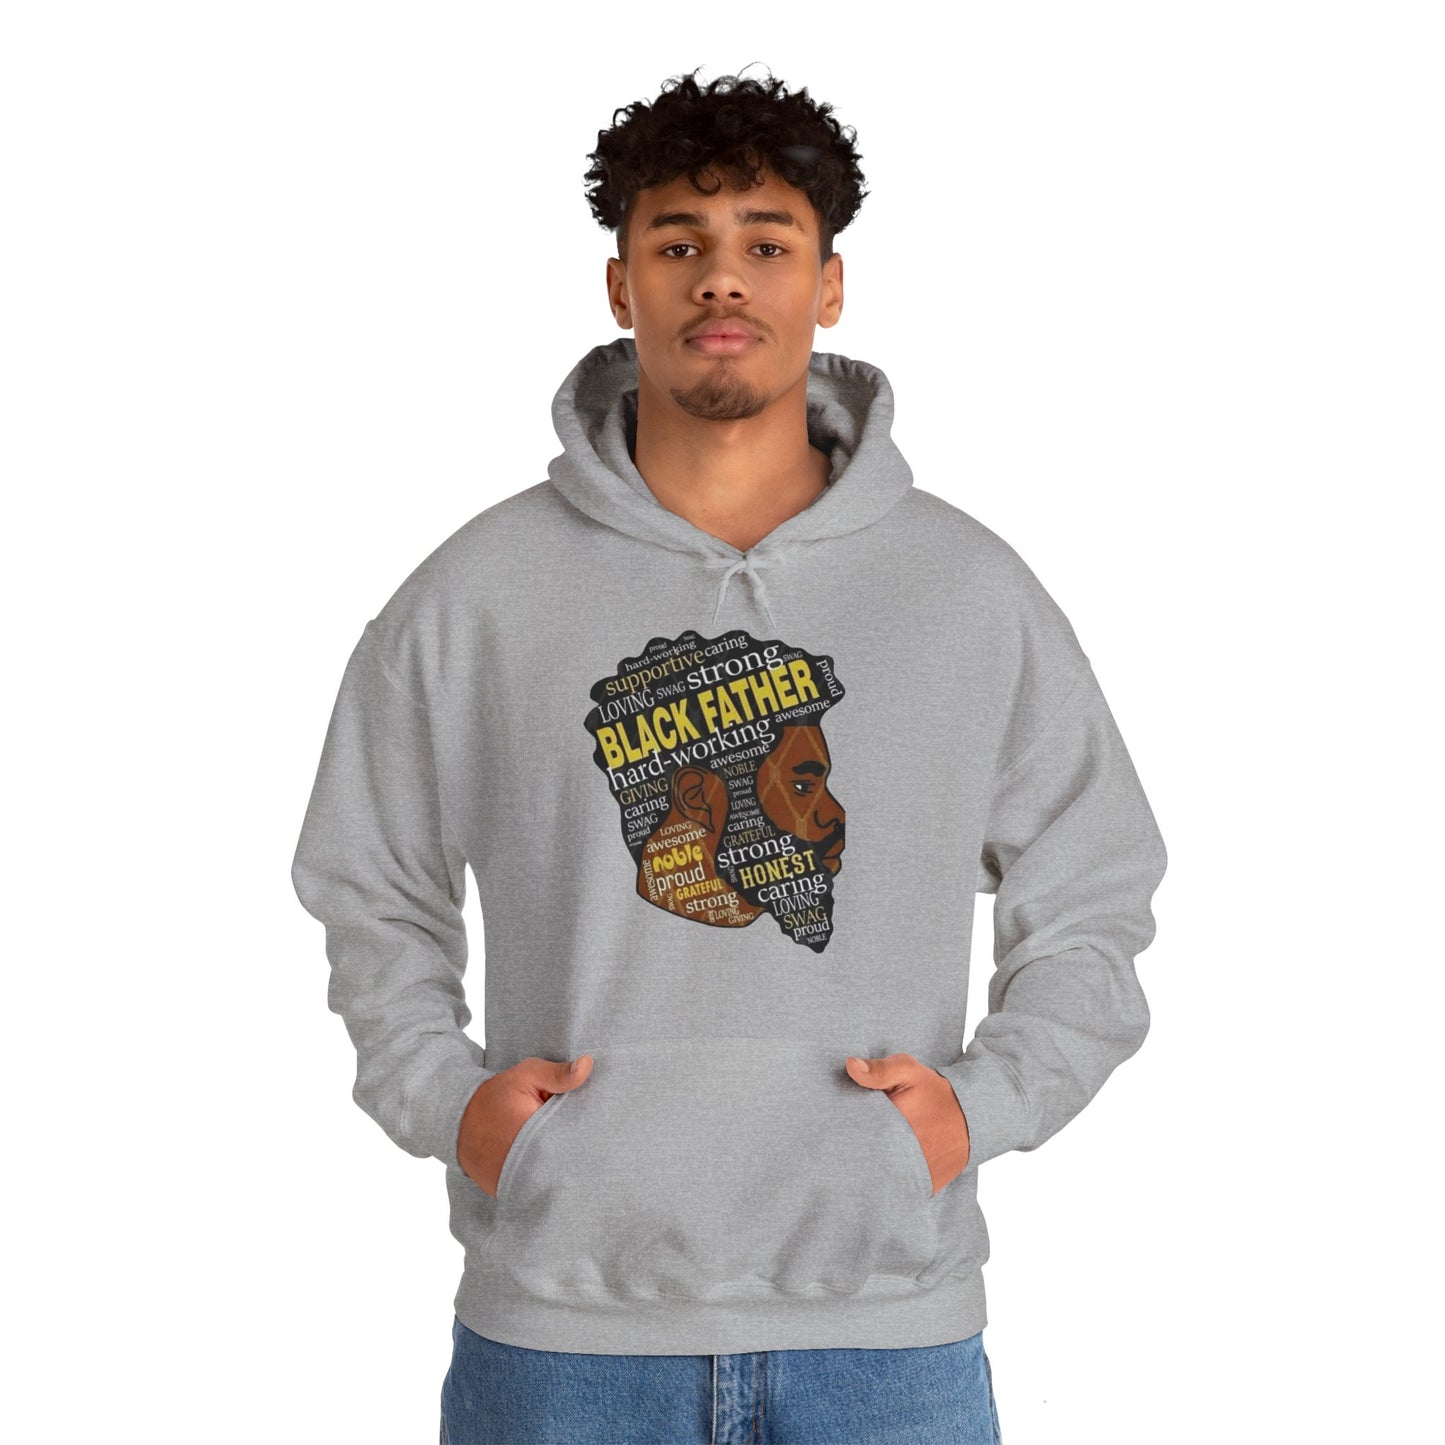 Black King Hoodie Sweatshirt